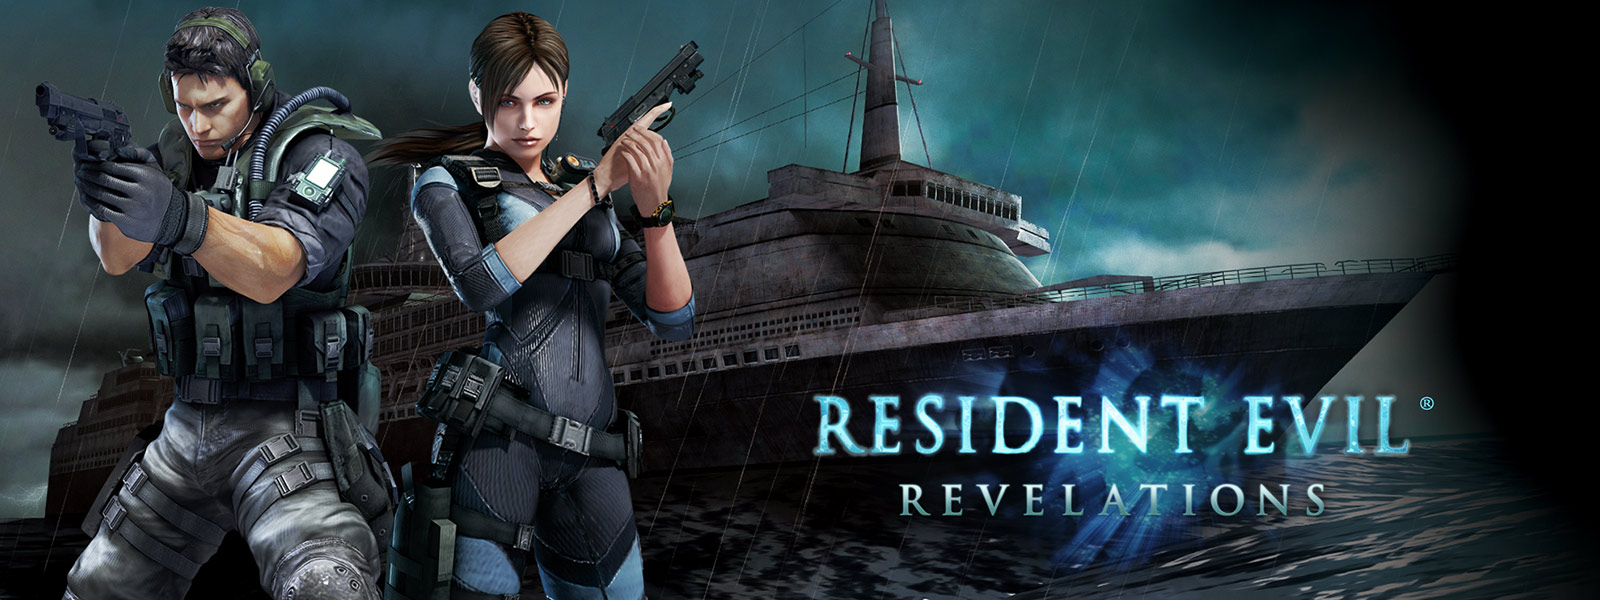 Resident Evil Revelations, két karaktert pisztolyt tart kezében egy kísérteties hajó előtt